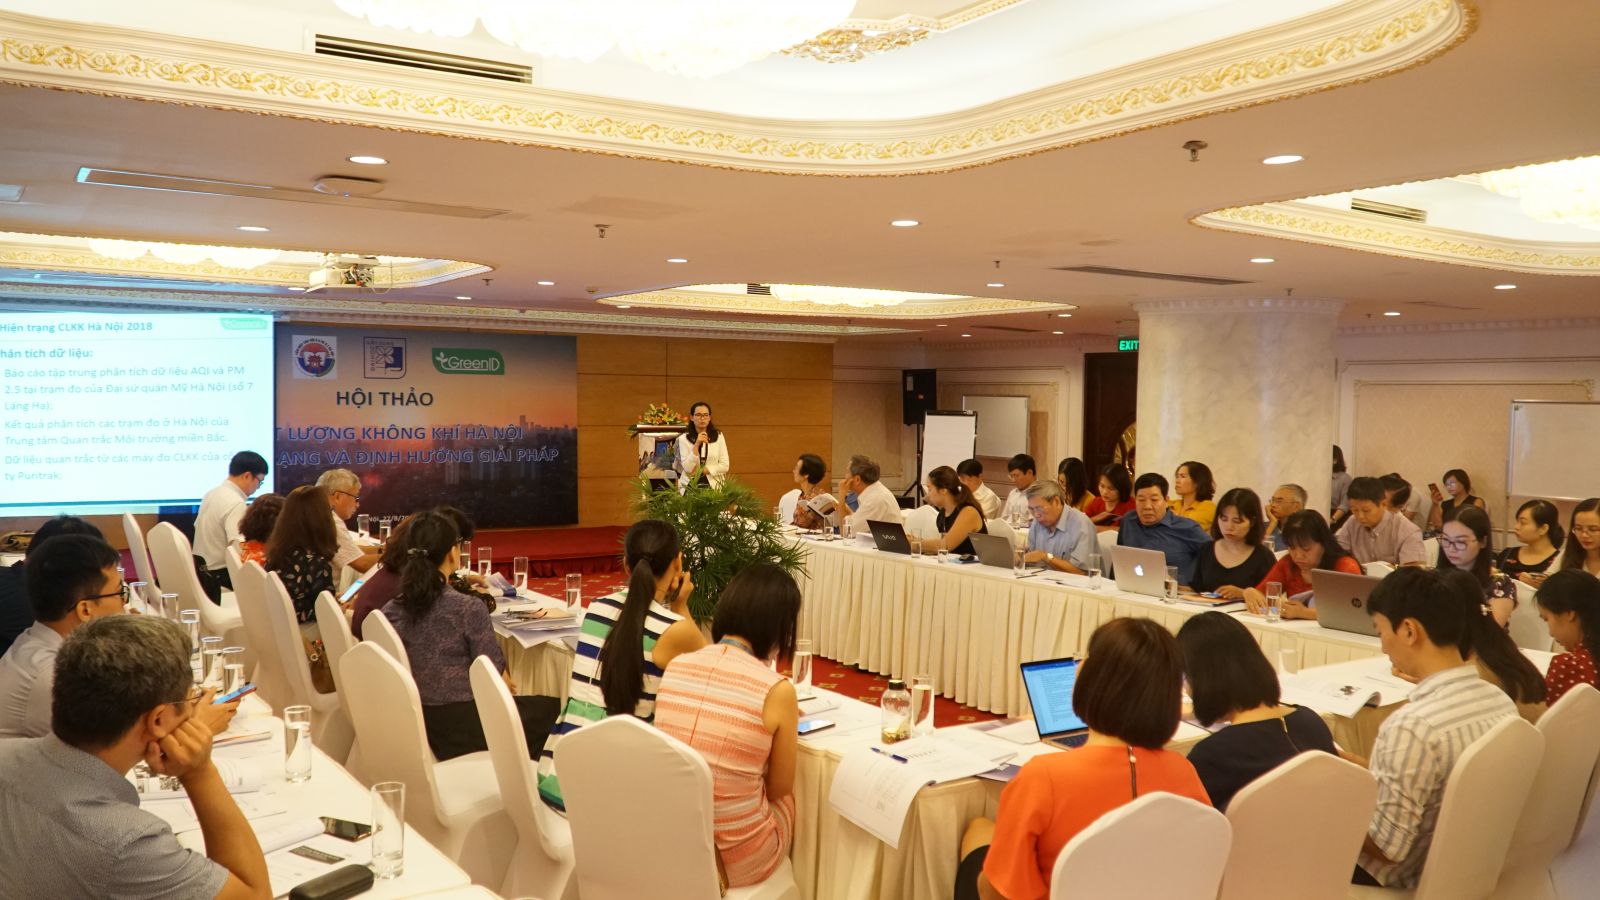 Hội thảo về “Chất lượng không khí Hà Nội: Thực trạng và định hướng giải pháp” được tổ chức với nhiều đề xuất Việt Nam cần sớm có Luật Không khí sạch (Ảnh Thanh Huyền)